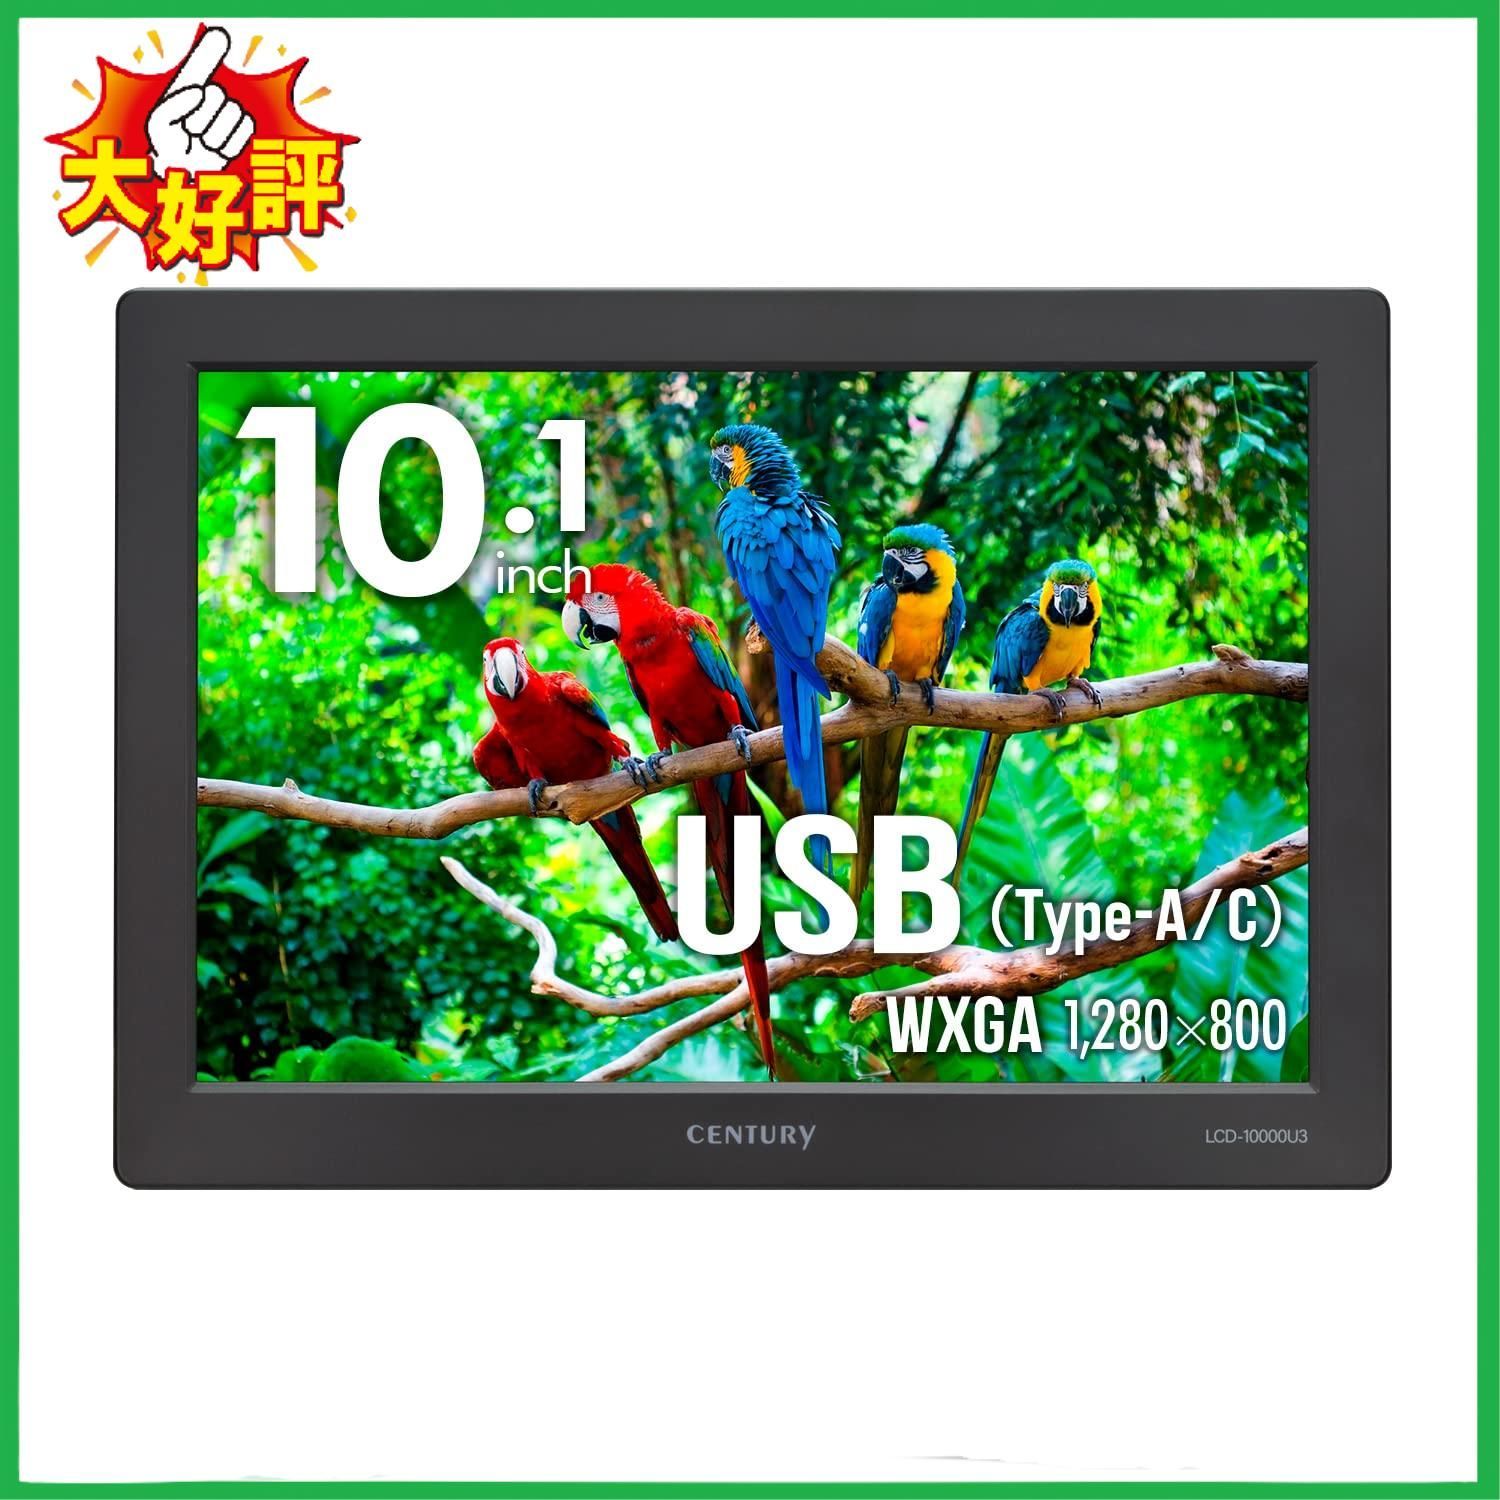 センチュリー 10.1インチ USBモニター plus one USB LCD-10000U3_FP 